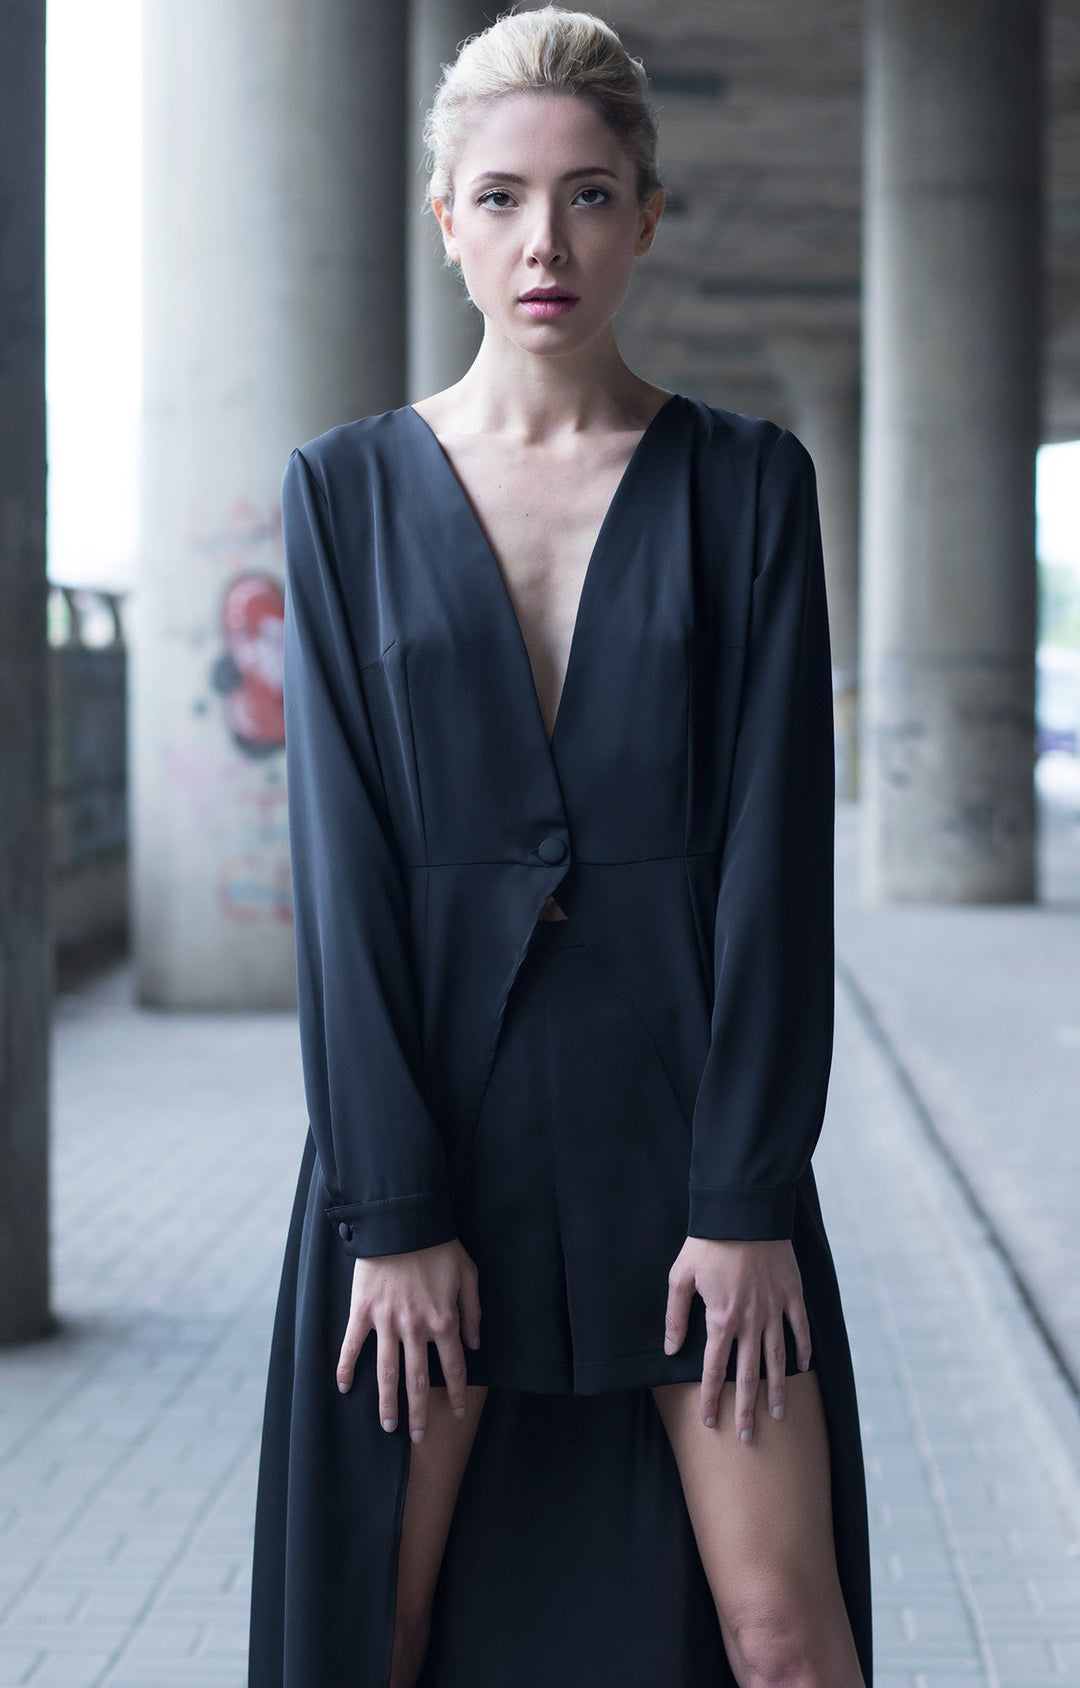 Black maxi cape dress with mini shorts BastetNoir